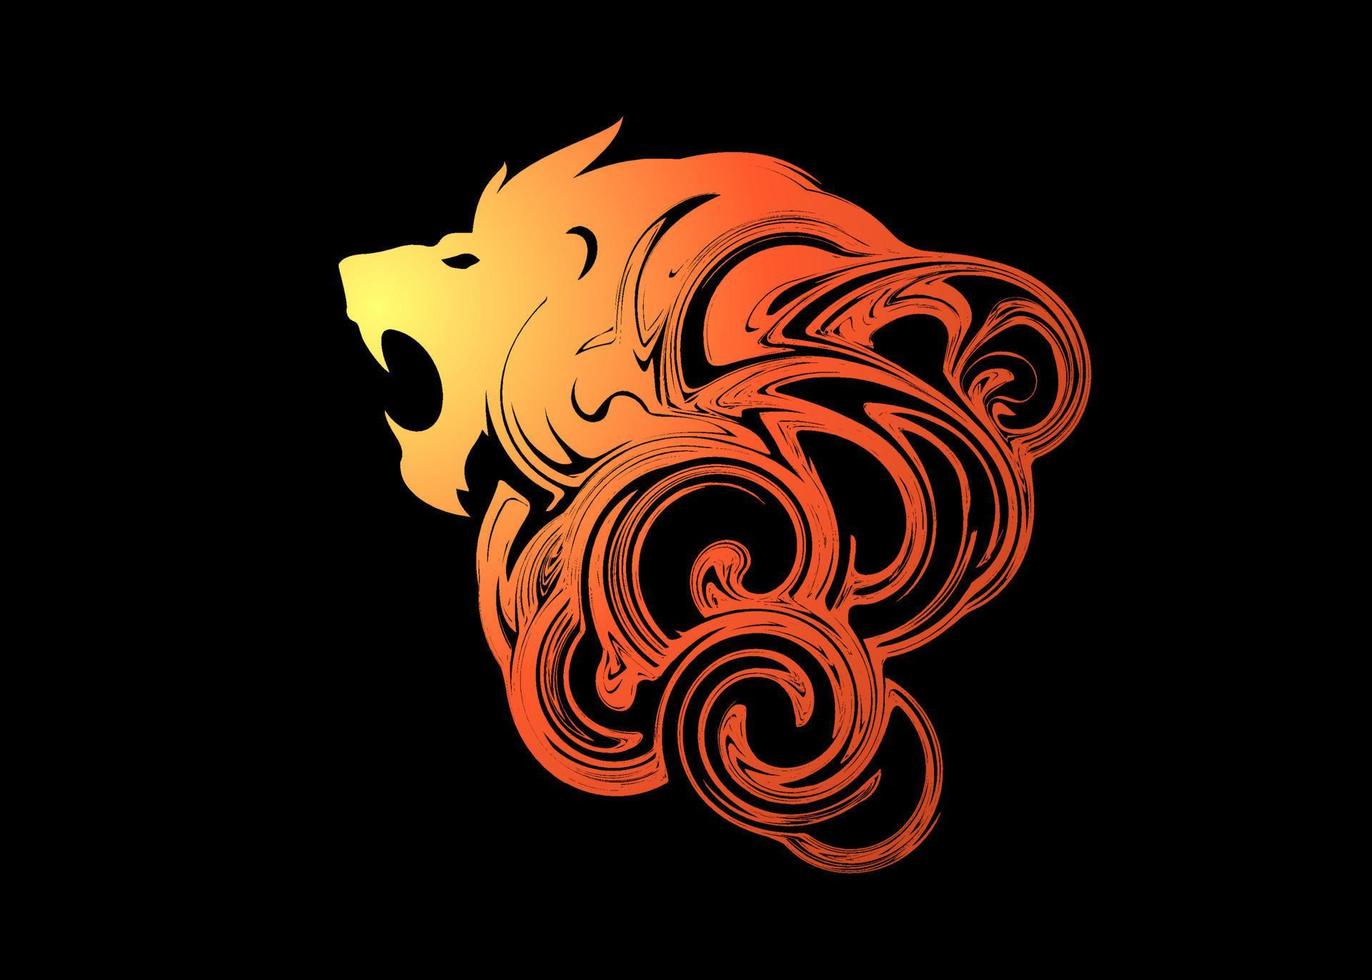 hermoso abstracto animal león rugido silueta pintura fondo de pantalla o fondo vector